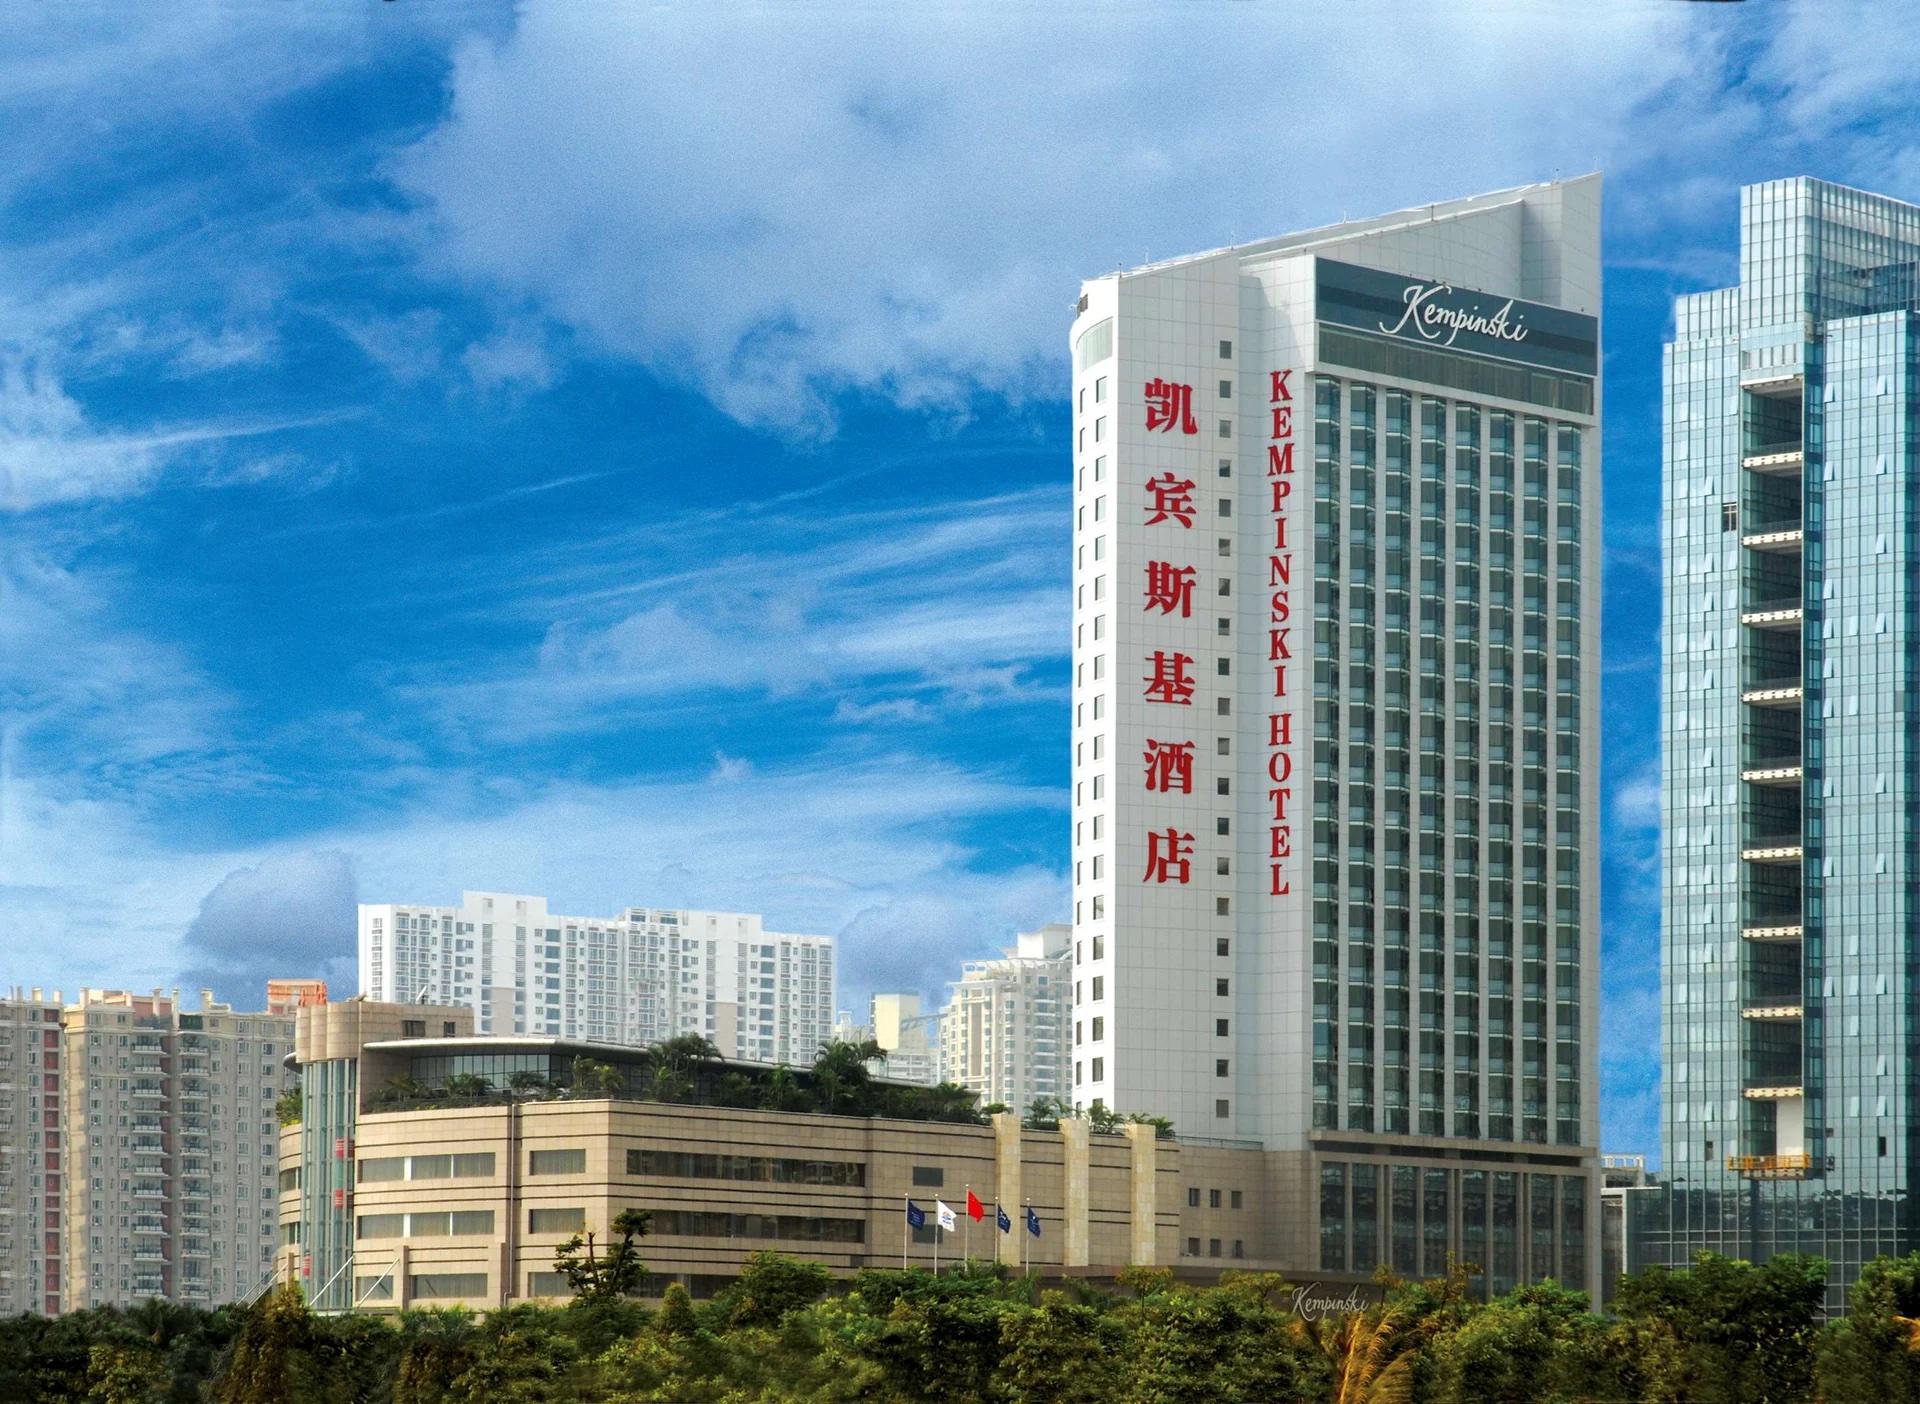 Kempinski Hotel Shenzhen Building